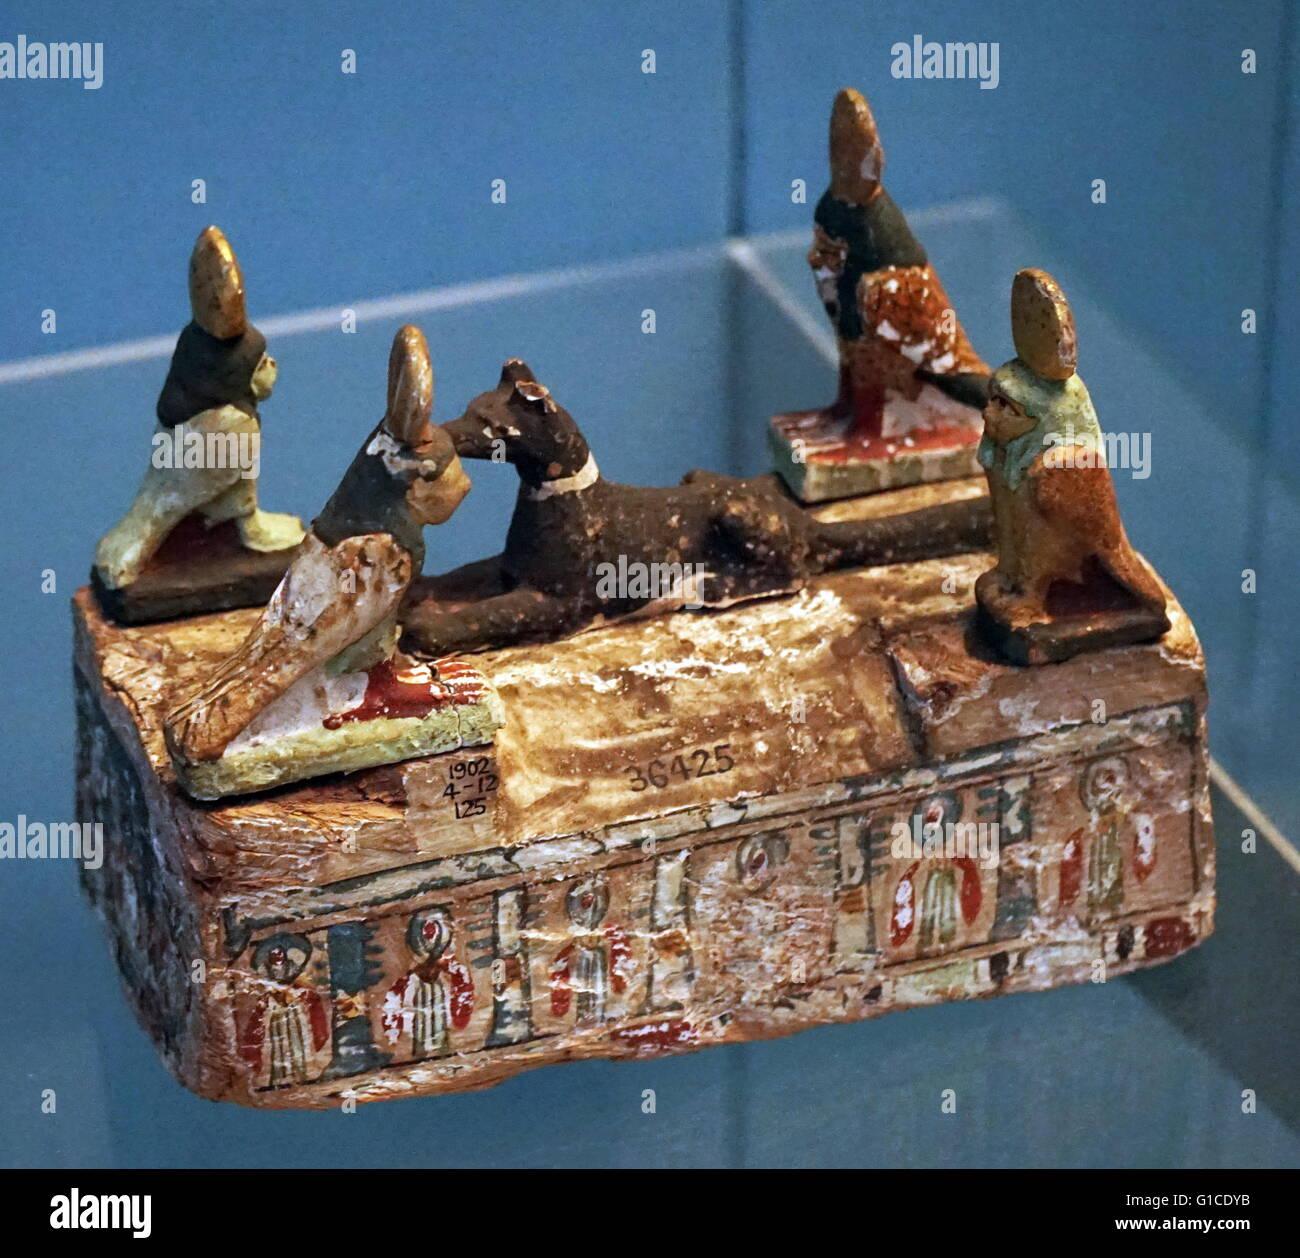 Sarcofago in miniatura di legno dipinto, con ba uccelli e jackal dal periodo tolemaico. Datata 305 BC Foto Stock